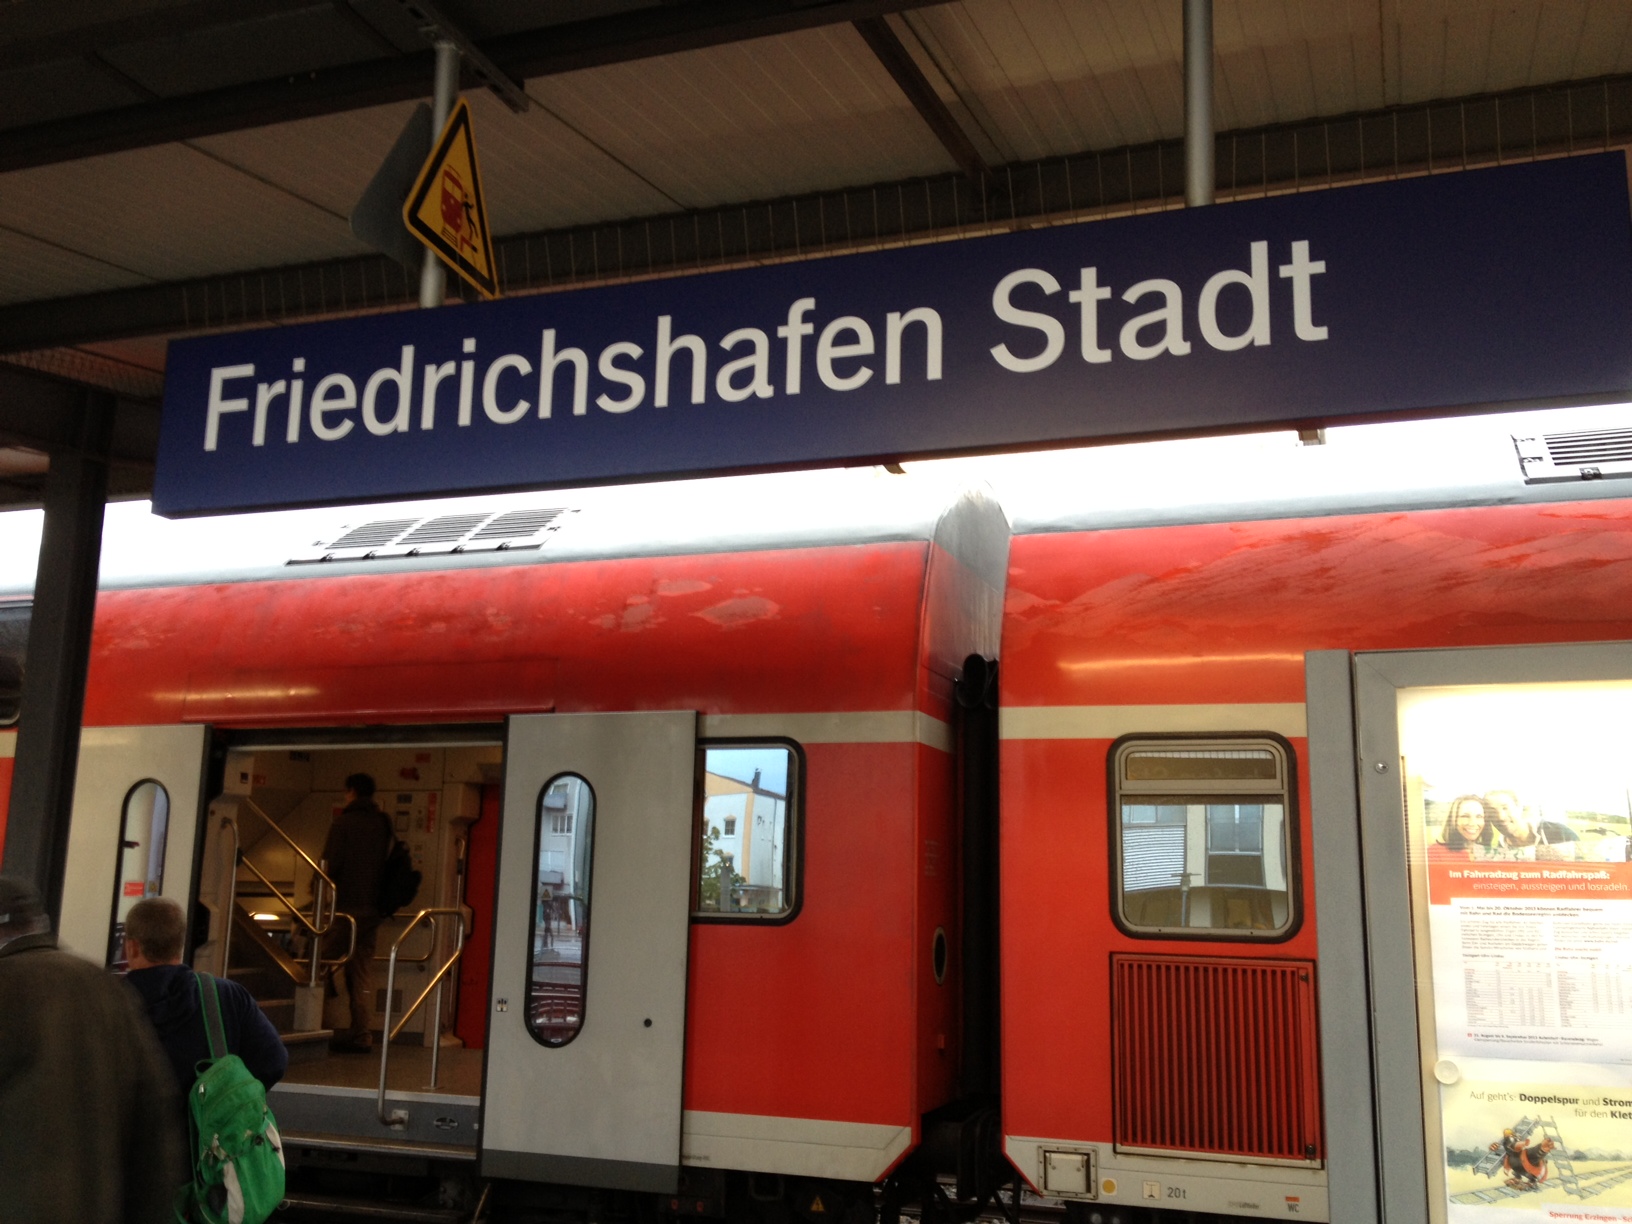 Friedrichshafen Stadt Bahnhof train station